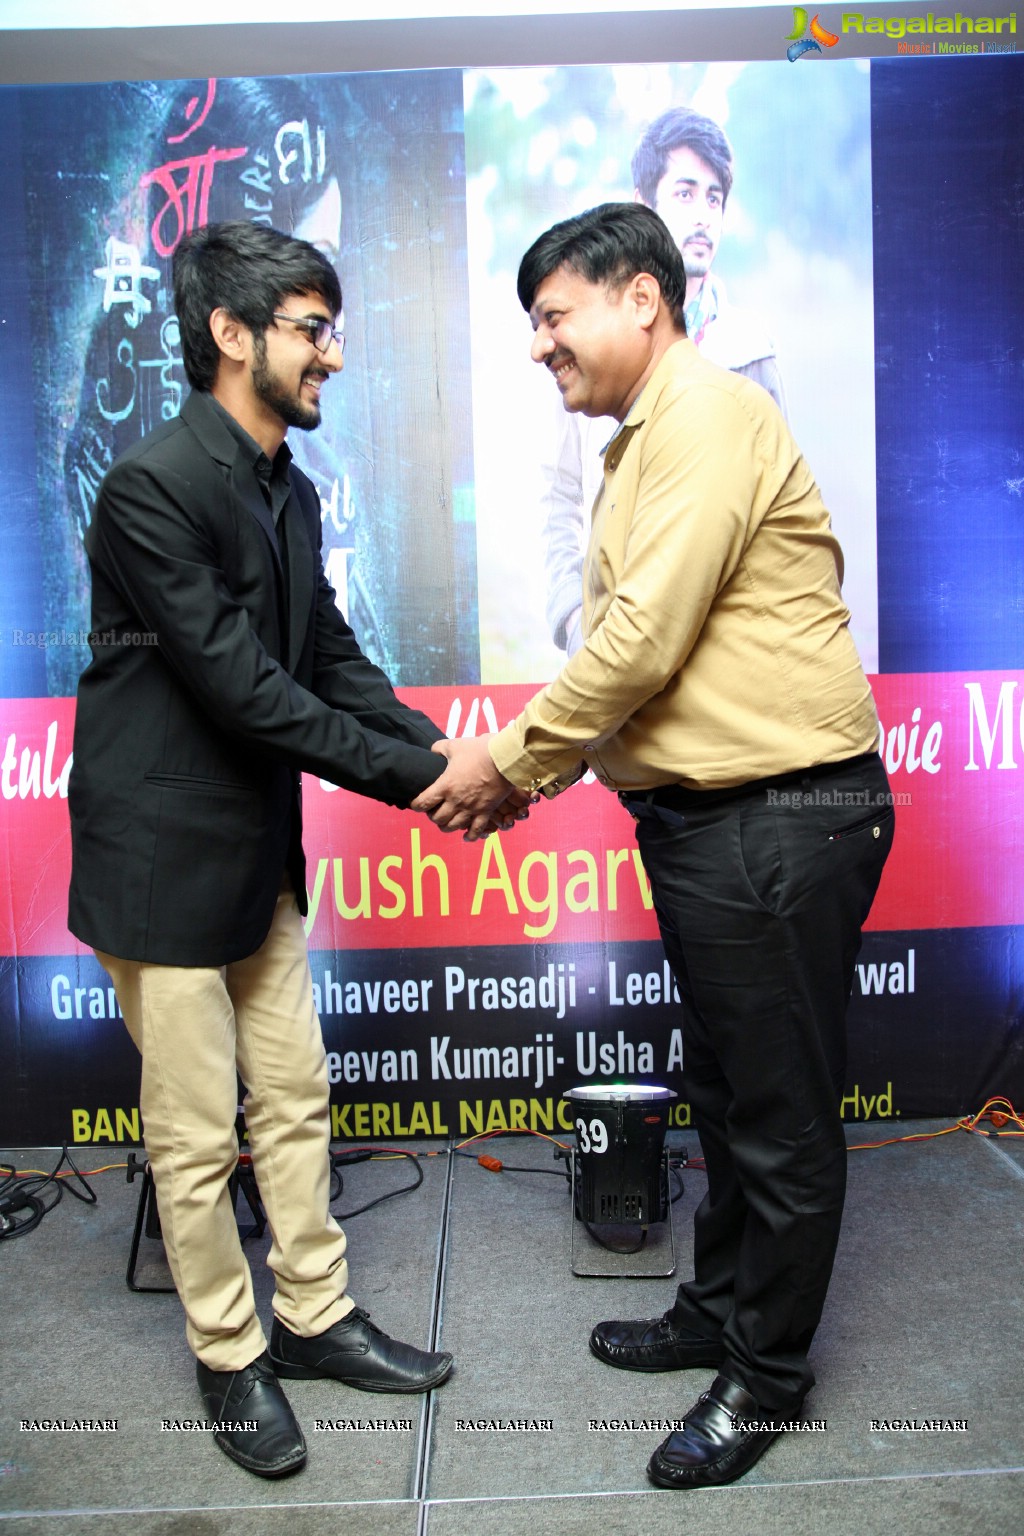 Meet and Greet with Ayush Agarwal at Marigold, Hyderabad